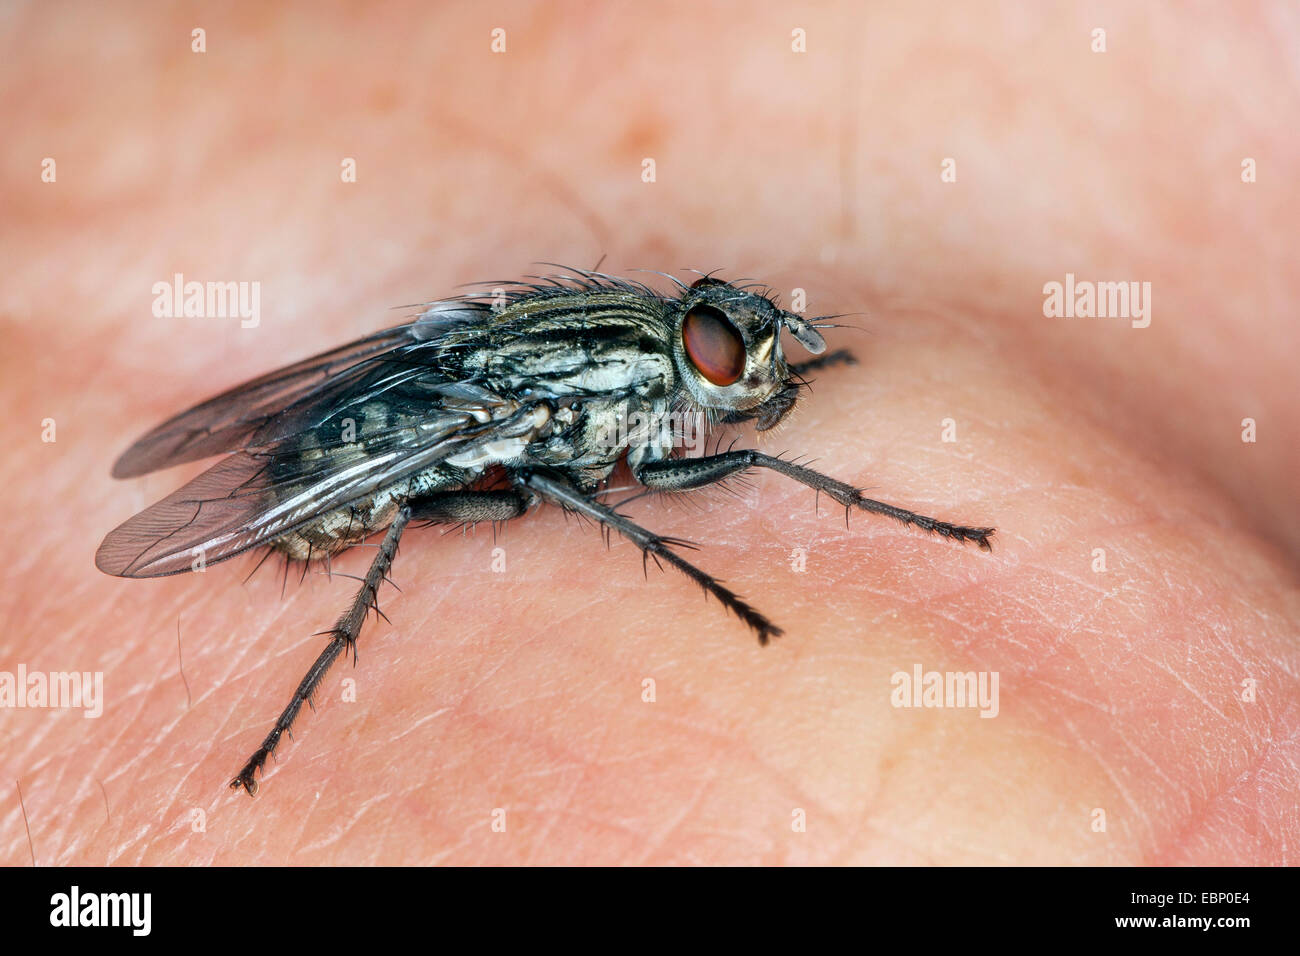 Feshfly, Fesh-fly (Sarcophaga spec.), on human skin, Germany Stock Photo